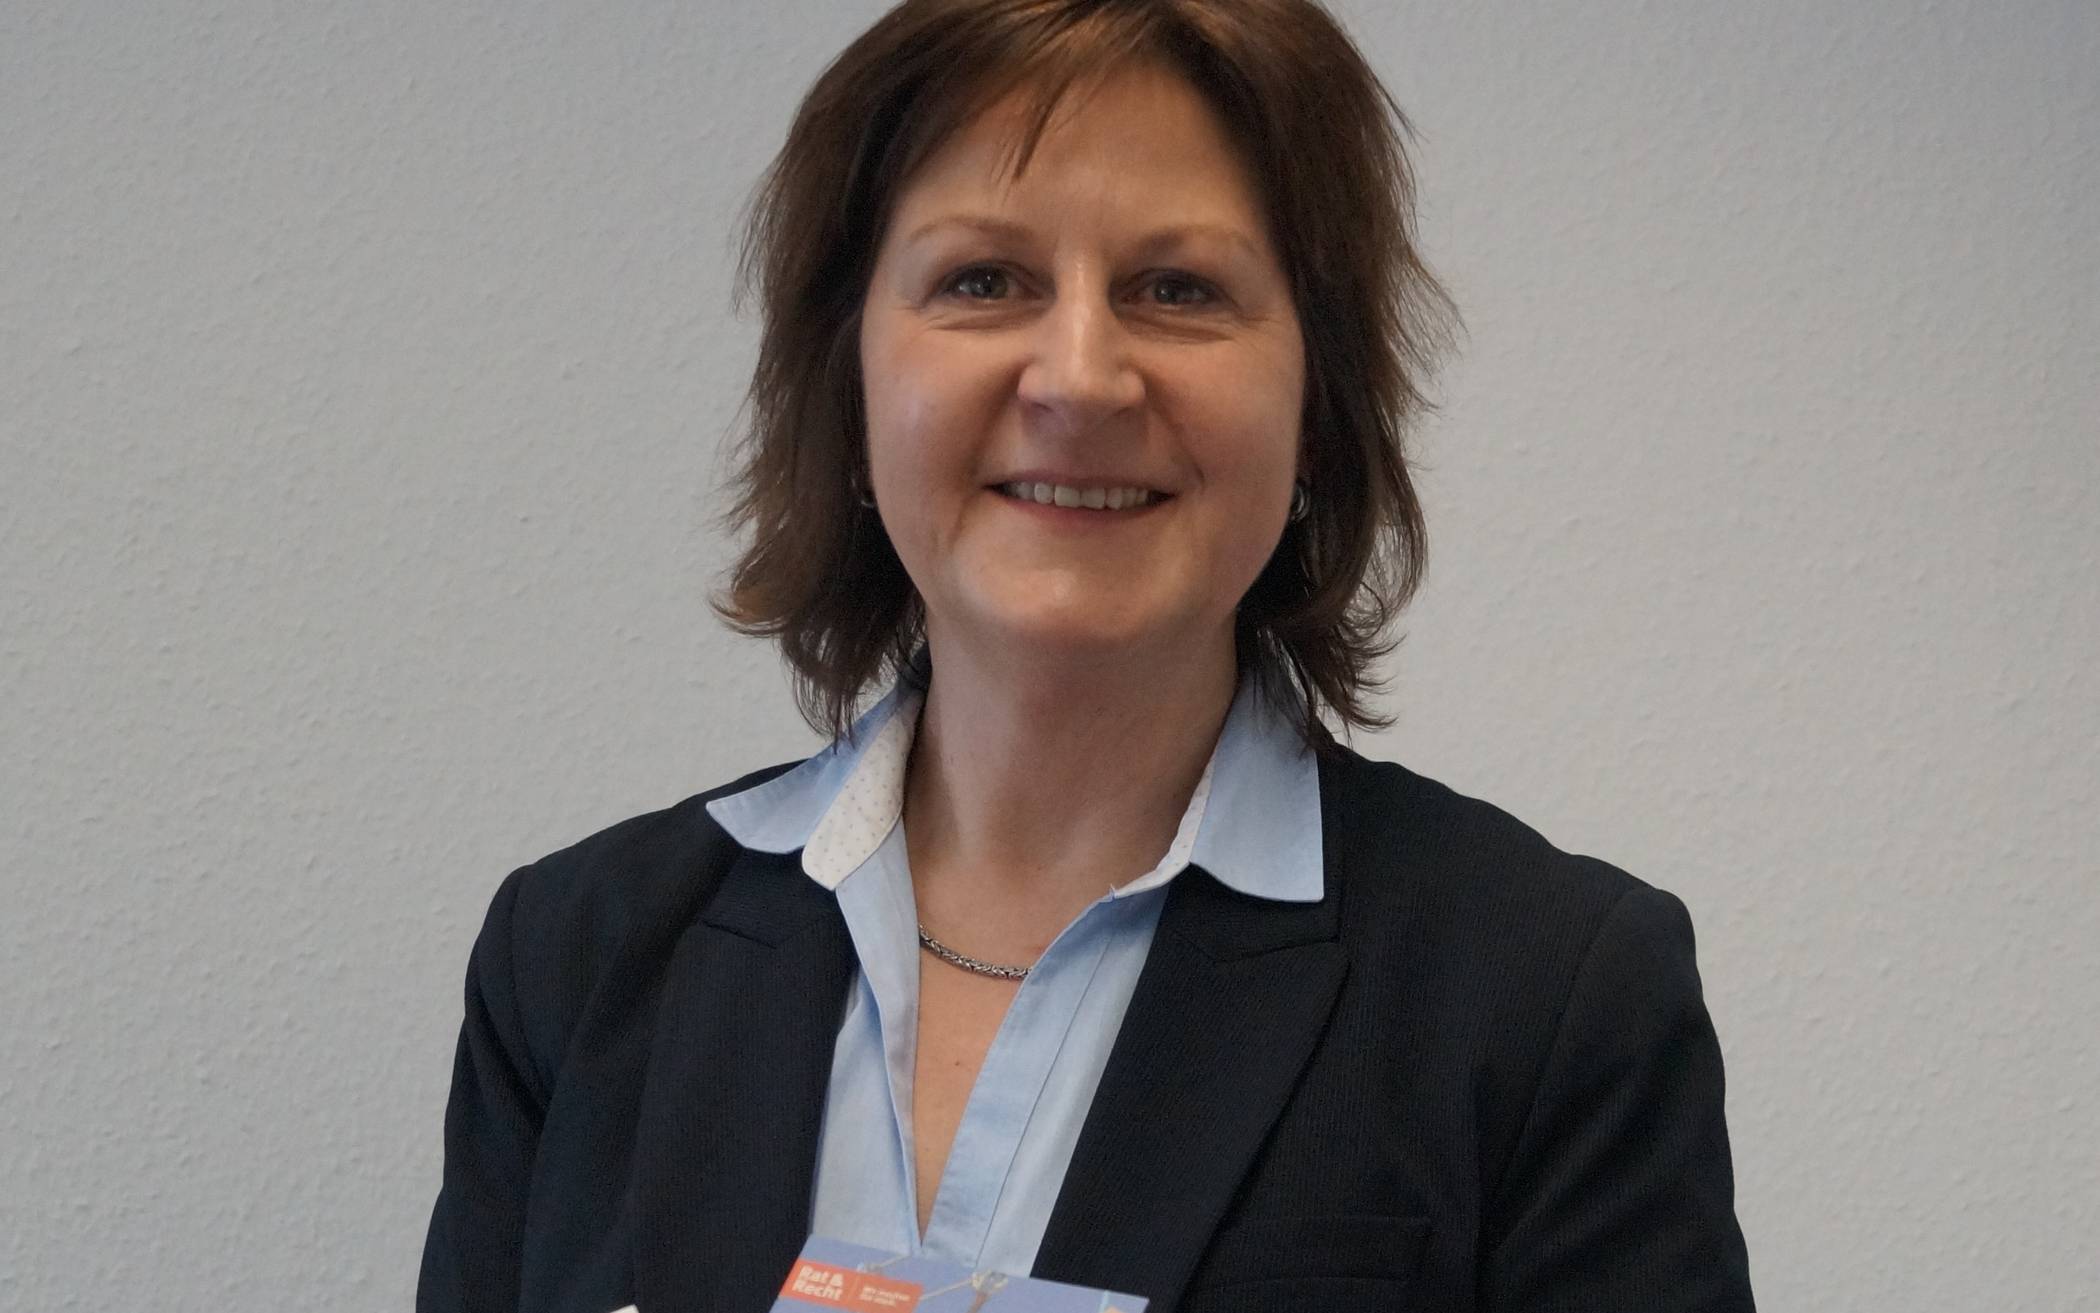  Dorothea Khairat von der Verbraucherzentrale NRW, Beratungsstelle Neuss.  